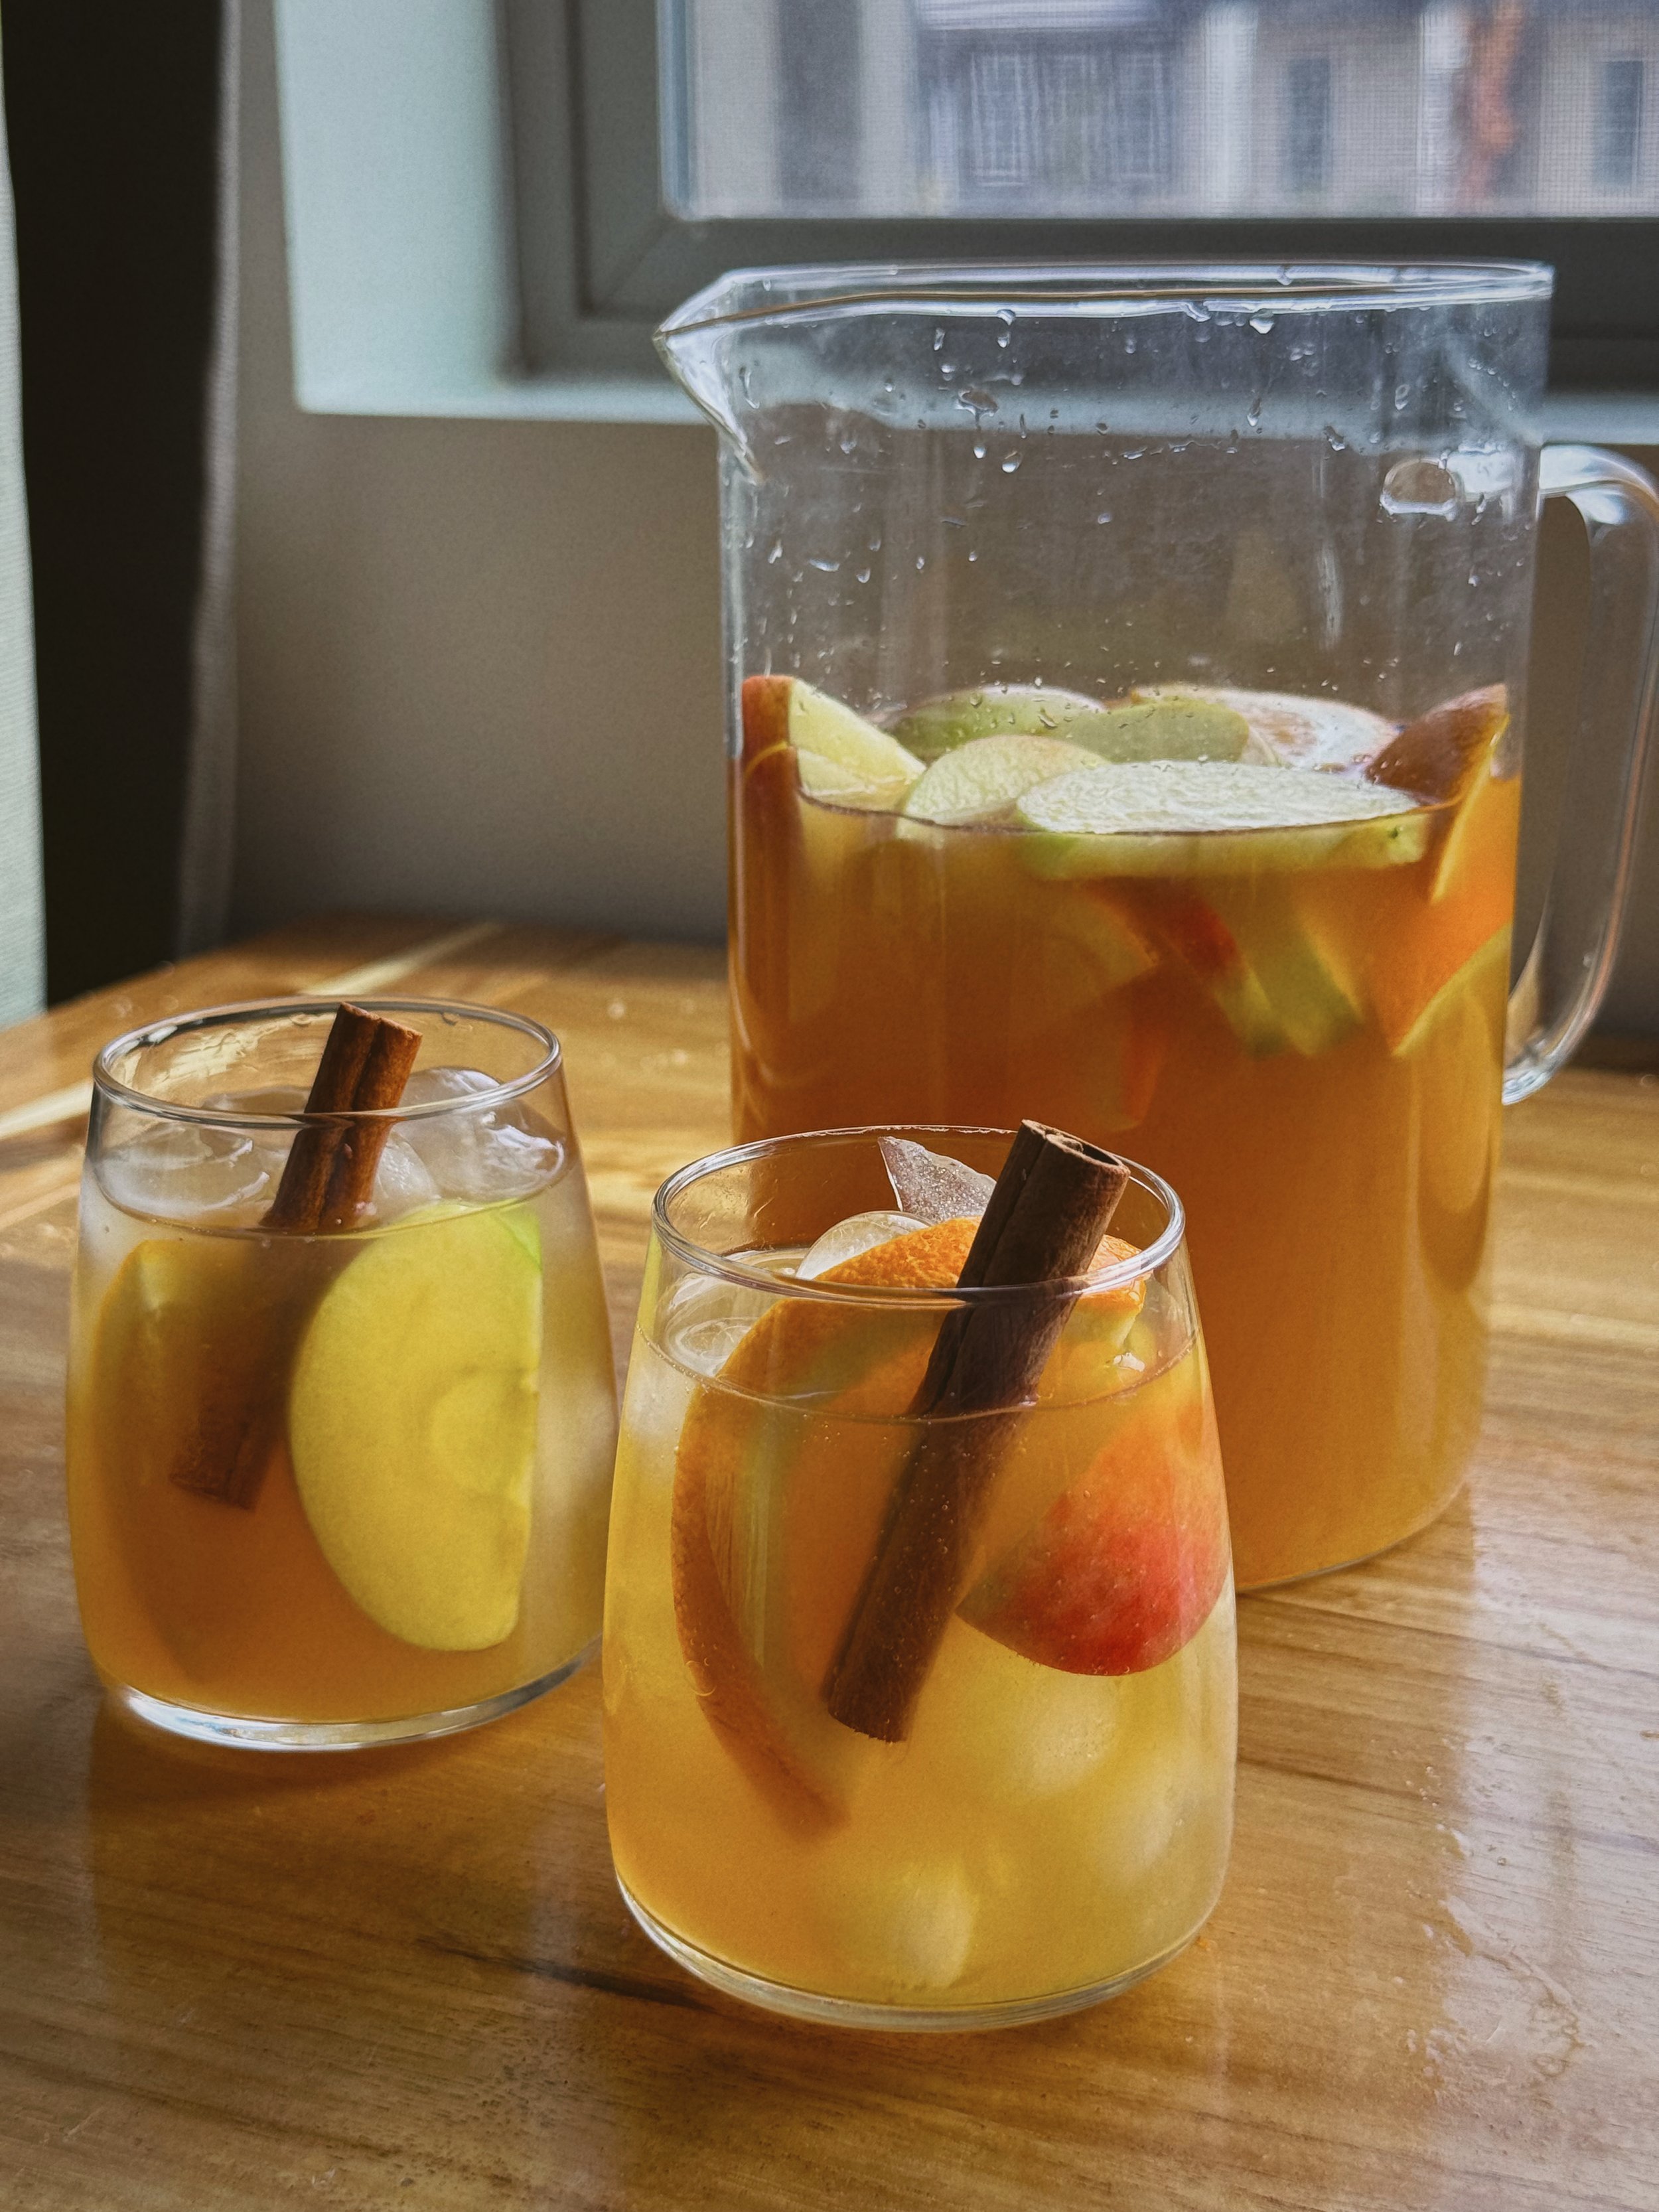 Apple Cider Sangria Pitcher - Being Summer Shores